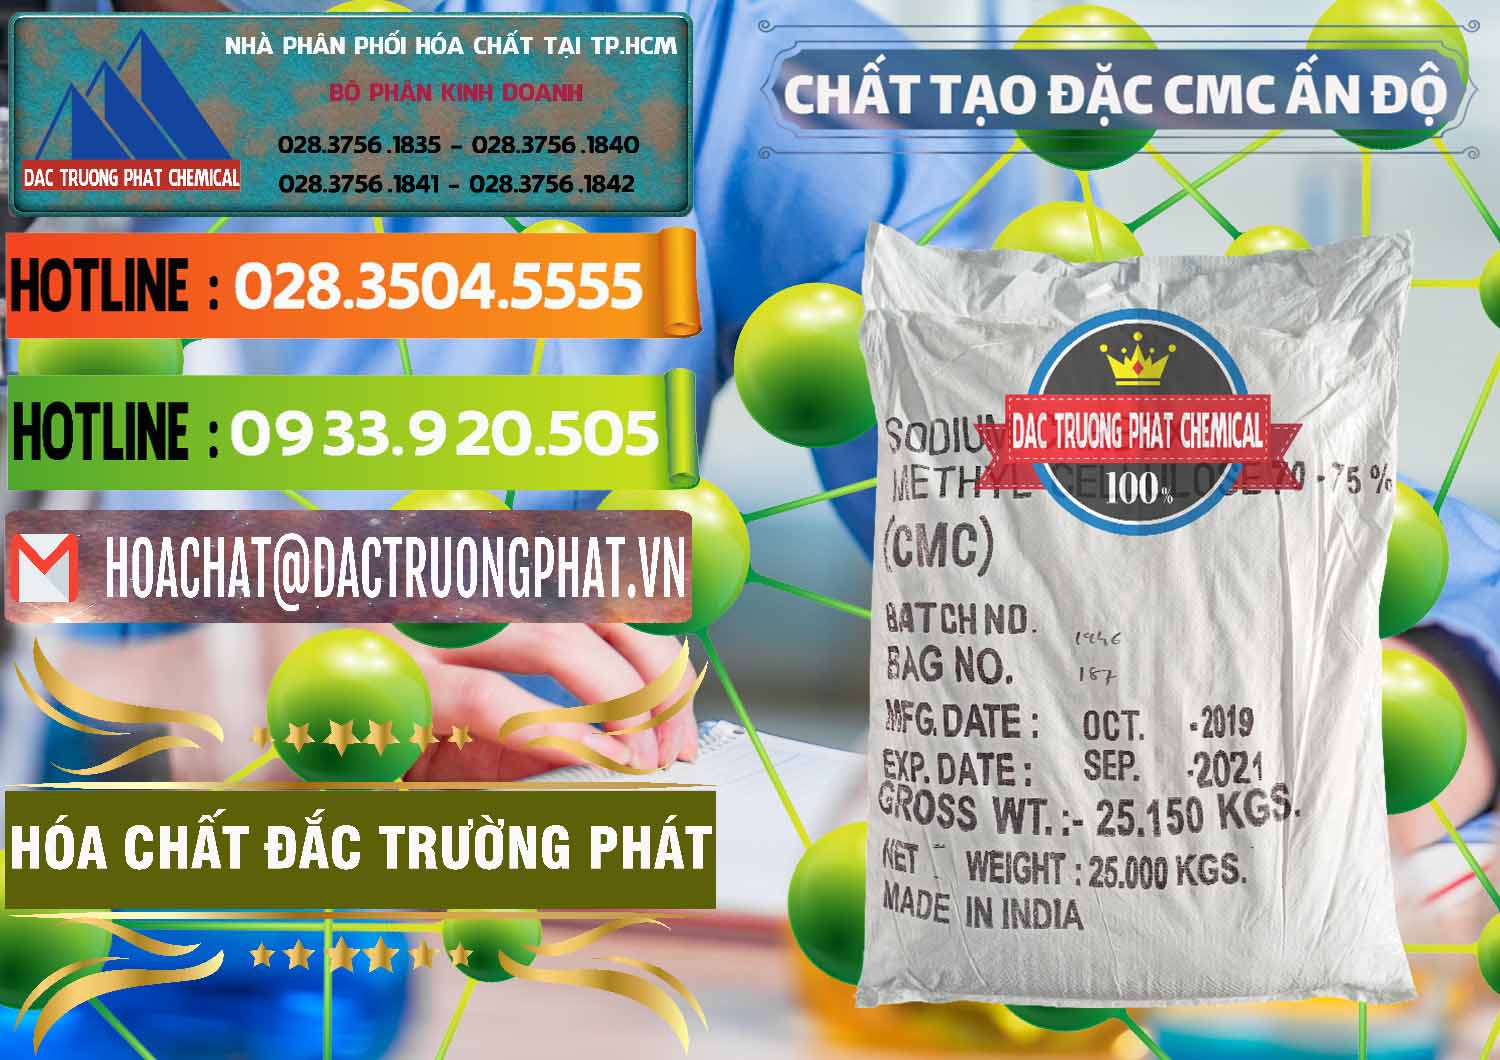 Đơn vị chuyên bán ( cung ứng ) Chất Tạo Đặc CMC - Carboxyl Methyl Cellulose Ấn Độ India - 0044 - Công ty chuyên cung cấp và kinh doanh hóa chất tại TP.HCM - cungcaphoachat.com.vn